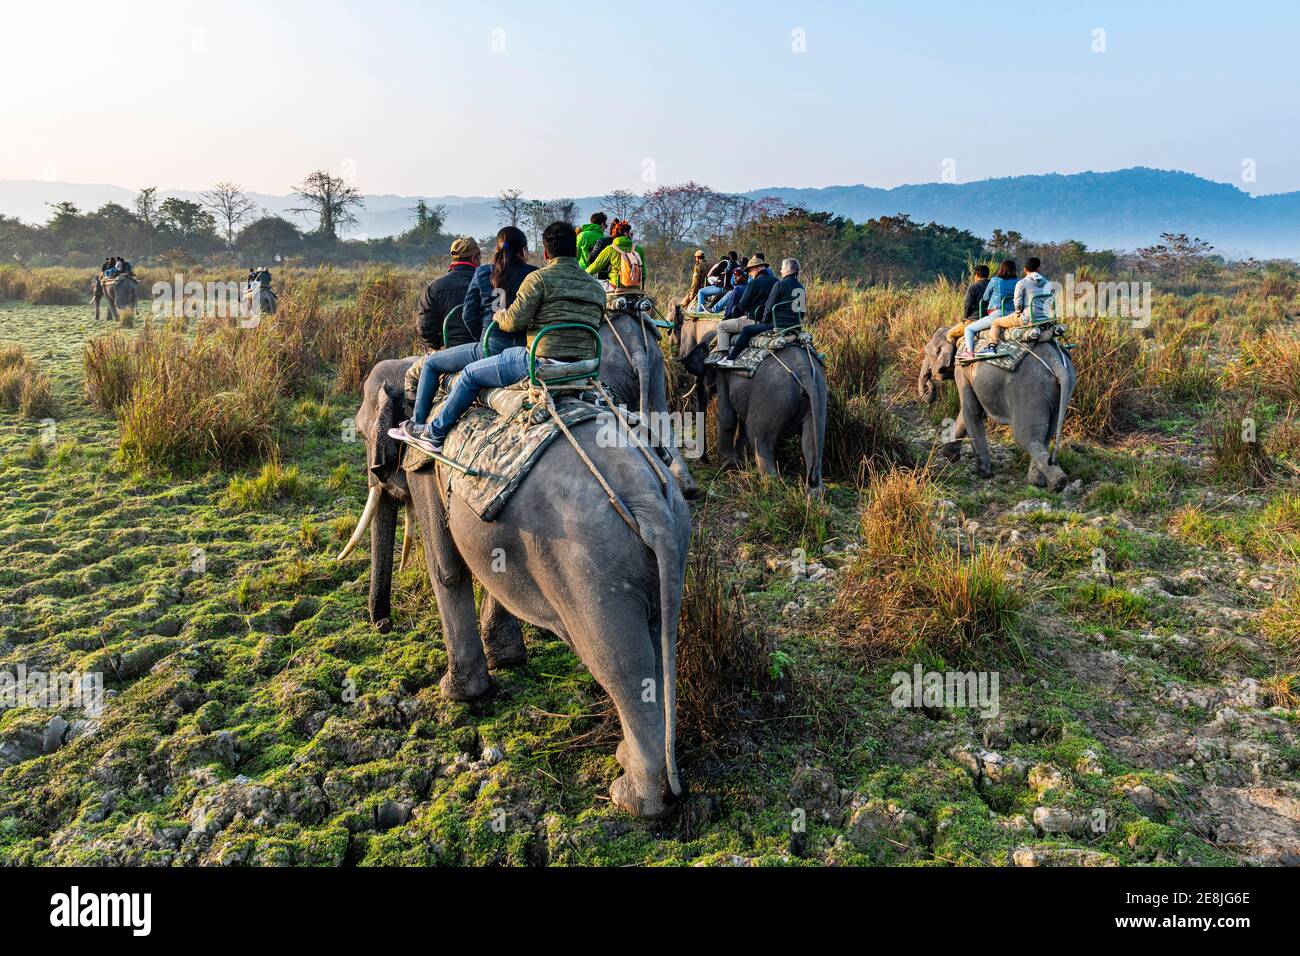 Early morning elephant ride on elephants through the elephant grass, Unesco world heritage site, Kaziranga National Park, Assam, India Stock Photo